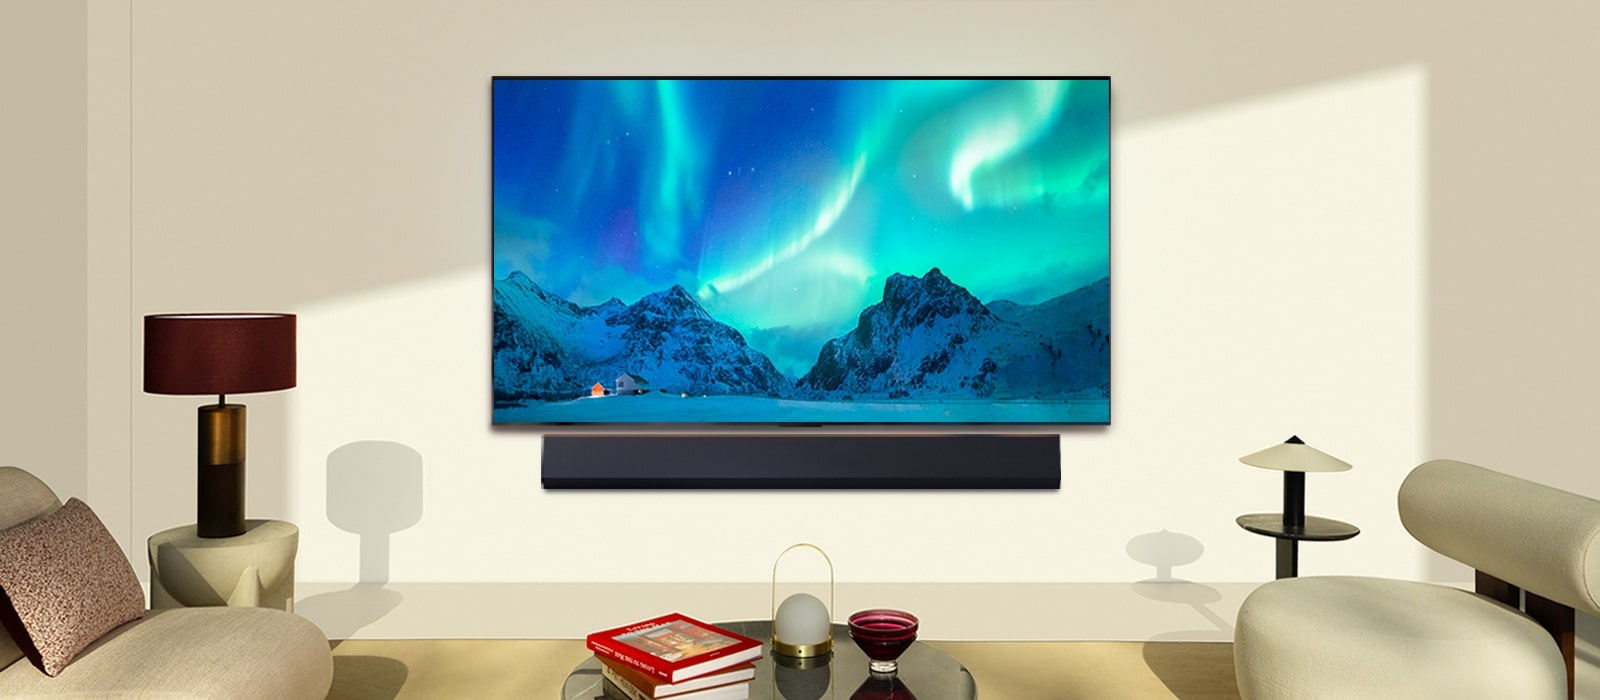 LG OLED TV i LG Soundbar u modernom životnom prostoru po danu. Na ekranu je prikazana slika polarne svetlosti na idealnom nivou osvetljenosti.